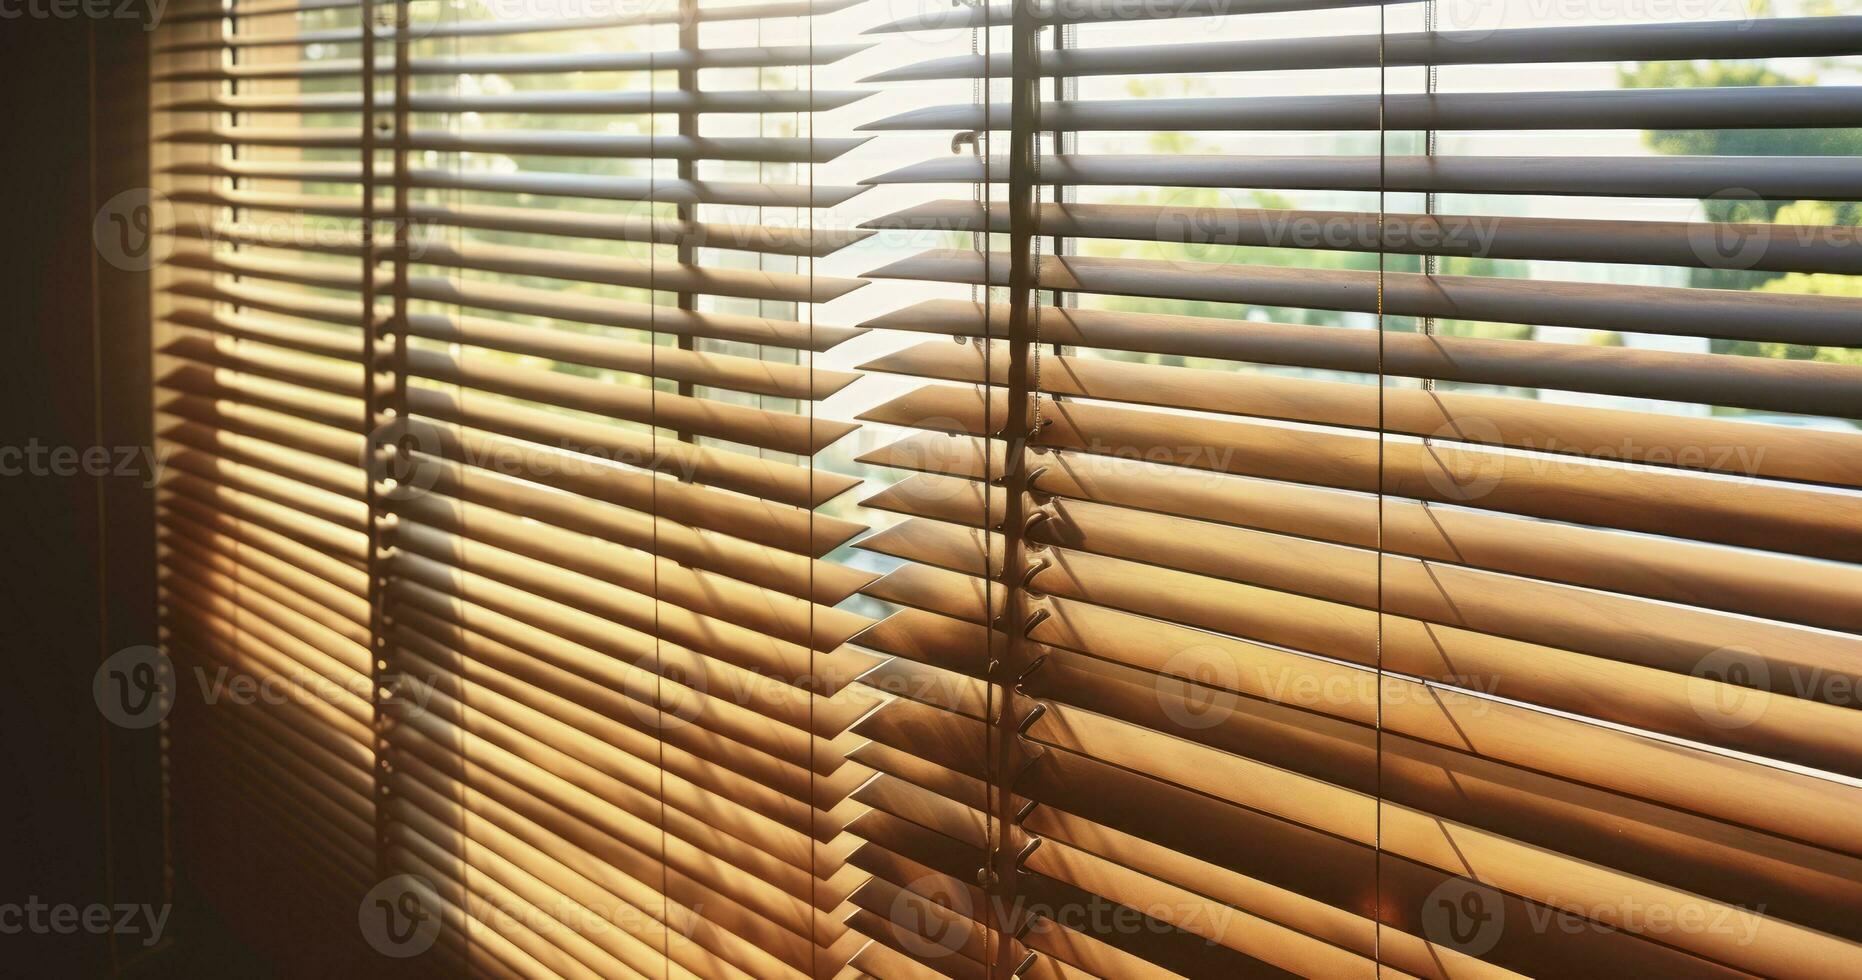 ai gerado pôr do sol silhuetas - capturando a caloroso brilho do tarde luz filtrando através de madeira janela persianas foto